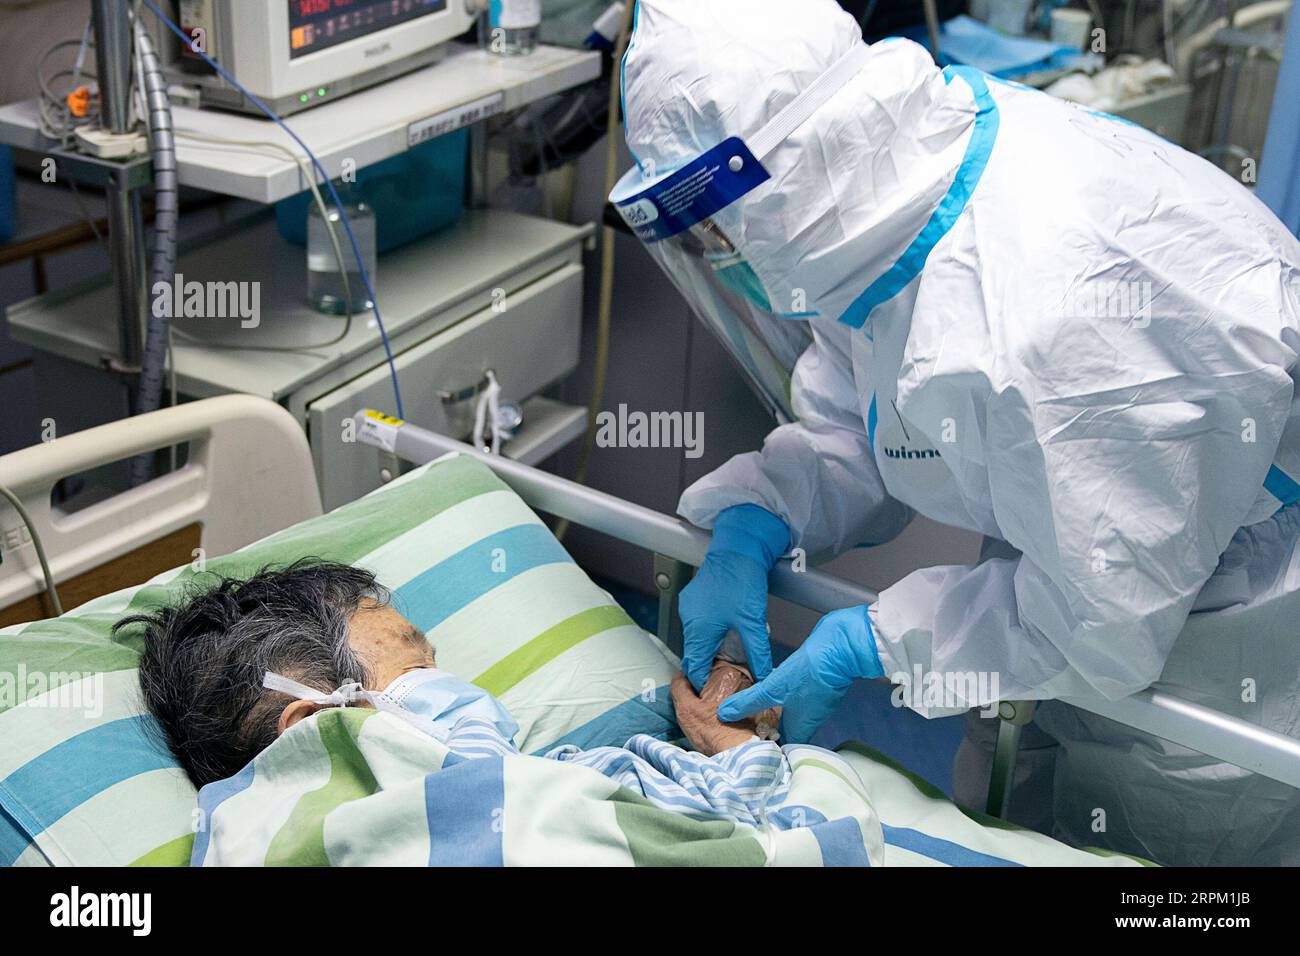 200124 -- WUHAN, 24 gennaio 2020 -- l'infermiera capo ma Jing tiene la mano di un paziente per confortarla nell'unità di terapia intensiva di terapia intensiva dell'ospedale Zhongnan dell'Università di Wuhan, provincia di Hubei, Cina centrale, 24 gennaio 2020. Giovedì a mezzanotte, la provincia di Hubei nella Cina centrale ha riportato 549 casi cumulativi confermati di nuova polmonite da coronavirus, con 495 a Wuhan, la capitale provinciale. CHINA-HUBEI-WUHAN-OPERATORE MEDICO CN XIONGXQI PUBLICATIONXNOTXINXCHN Foto Stock